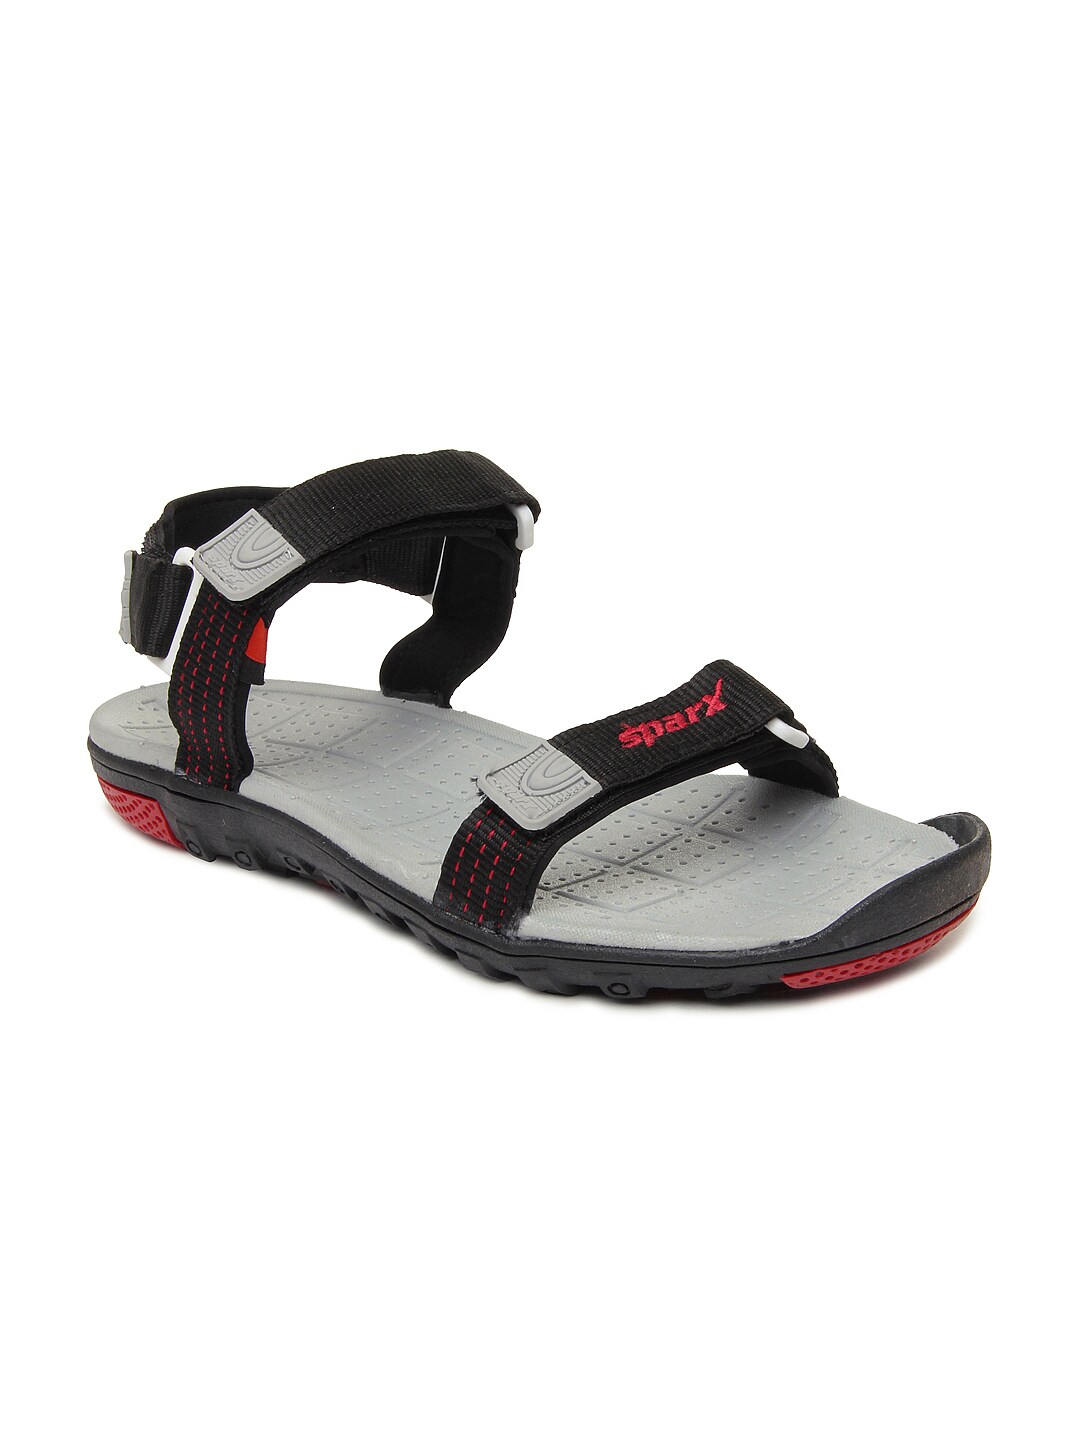 Buy Sparx Men Black Sports Sandals - 449 - Footwear for Men - 287597